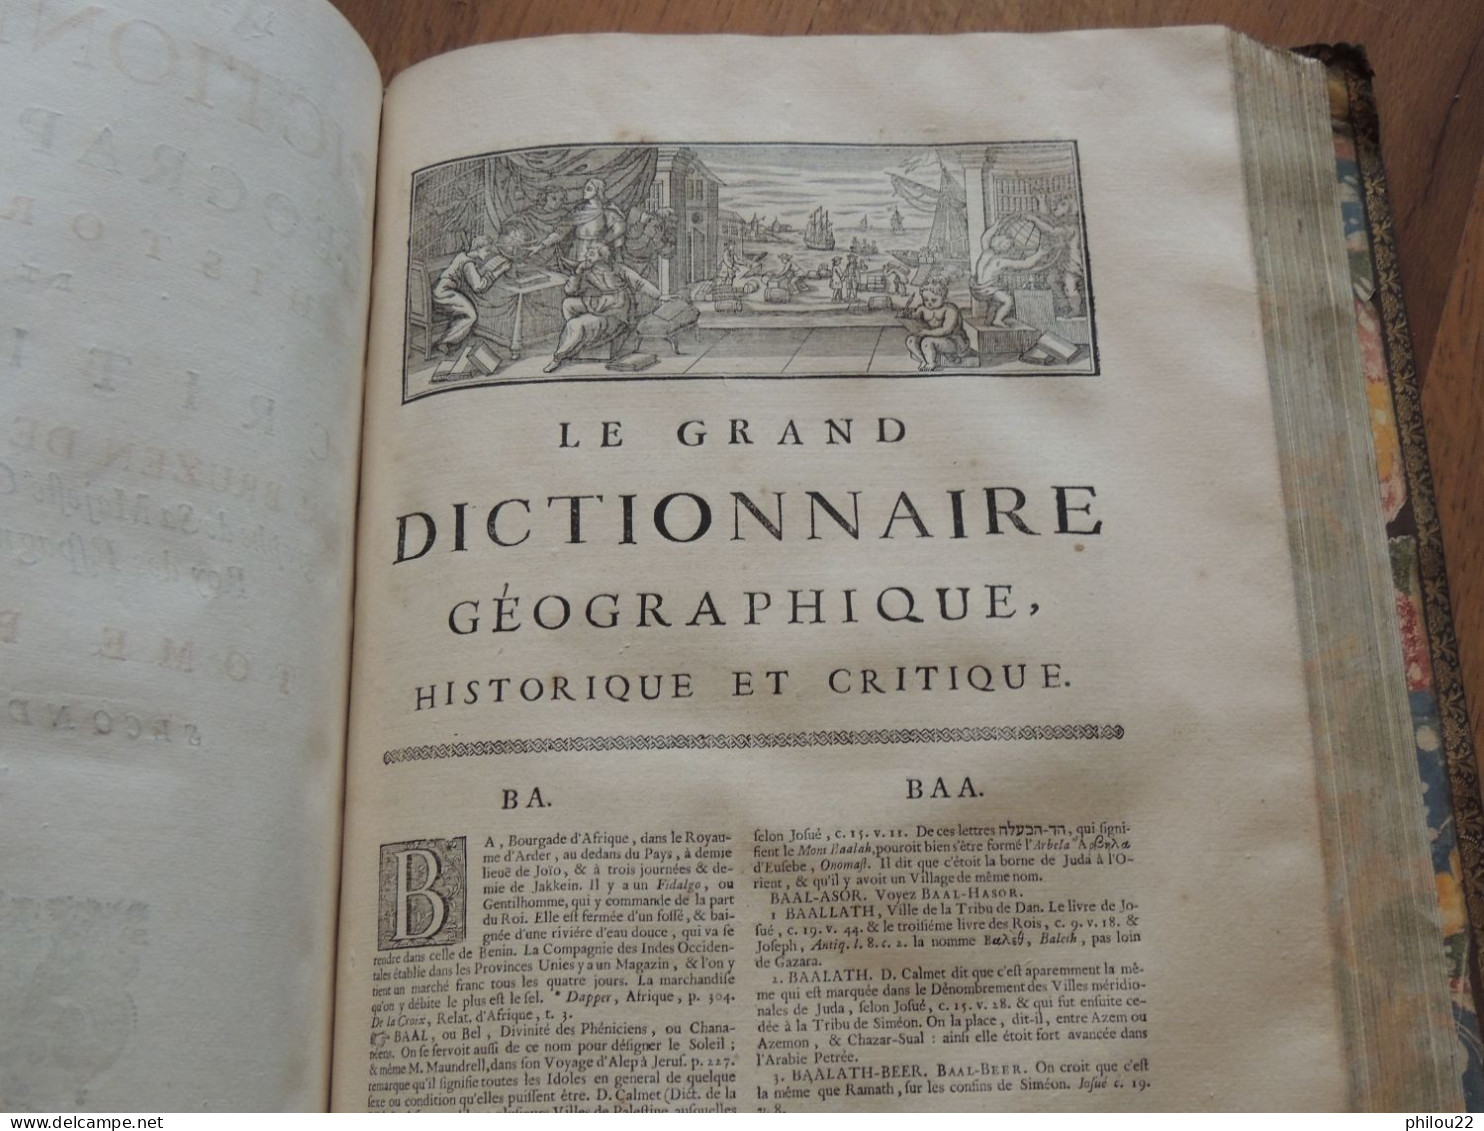 BRUZEN de LA MARTINIERE - Le grand dictionnaire géographique.. 6/6 in-folio 1739